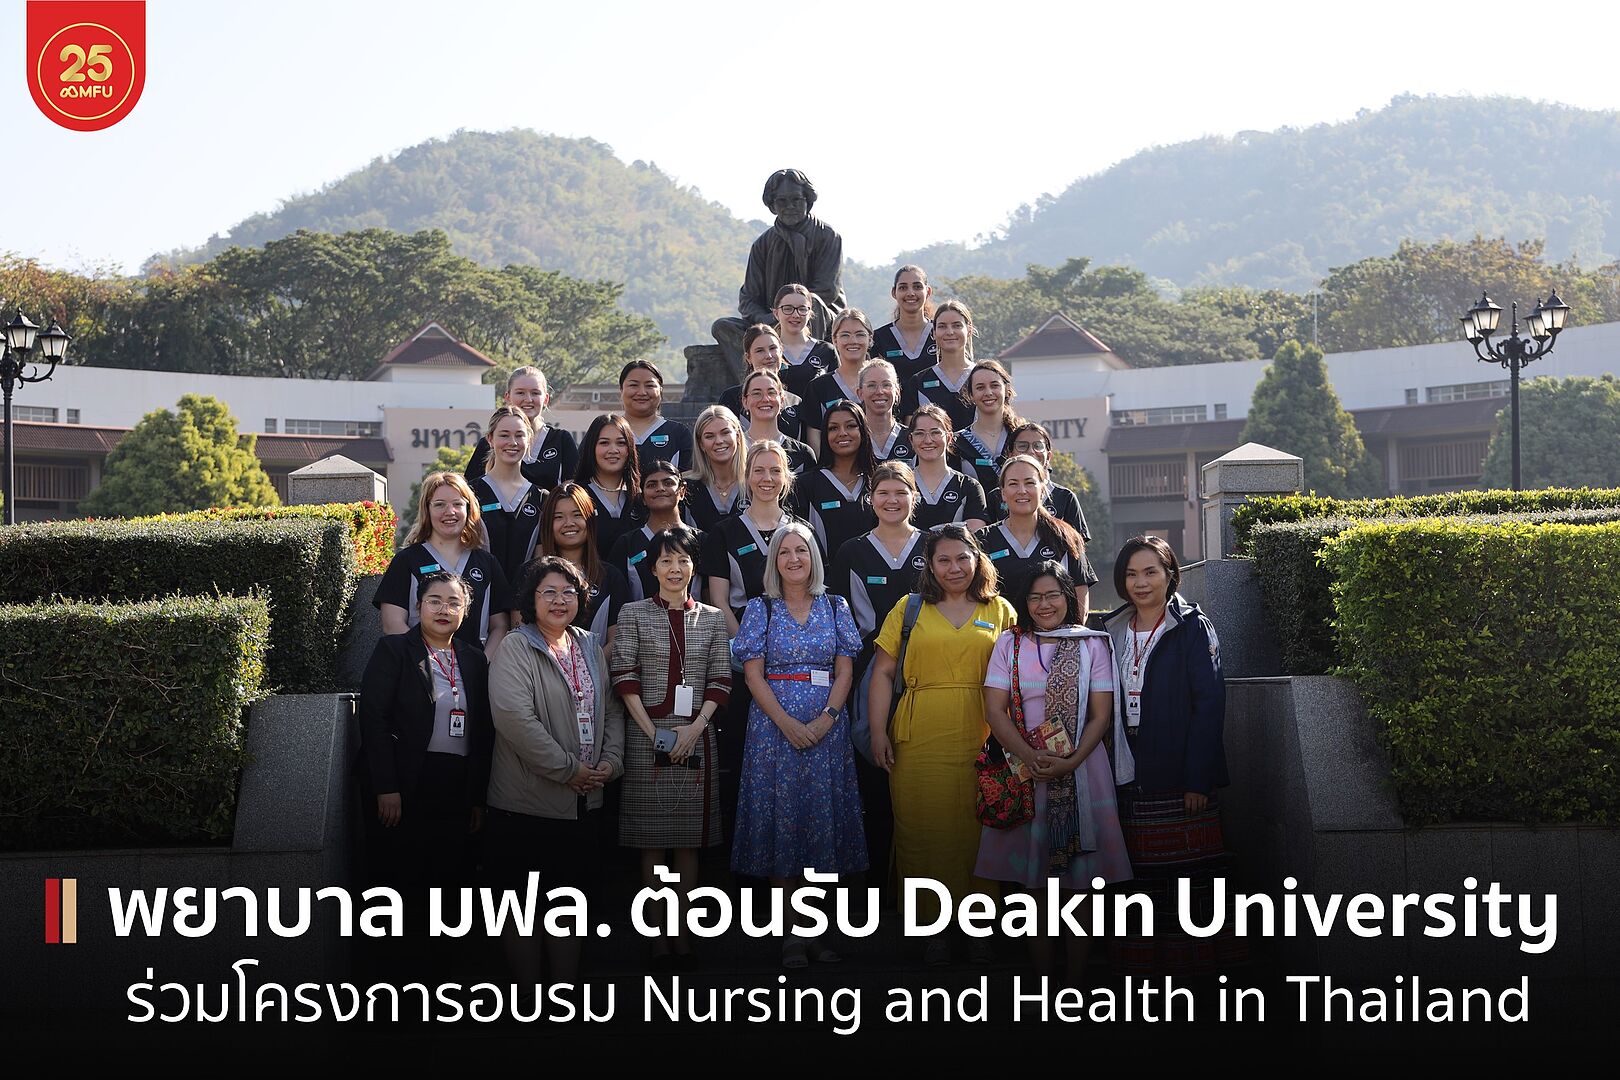 สนว. พยาบาล ต้อนรับ Deakin University School of Nursing & Midwifery ออสเตรเลีย ศึกษาดูงานด้านการพยาบาลและการส่งเสริมสุขภาพในพื้นที่ระหว่างประเทศ